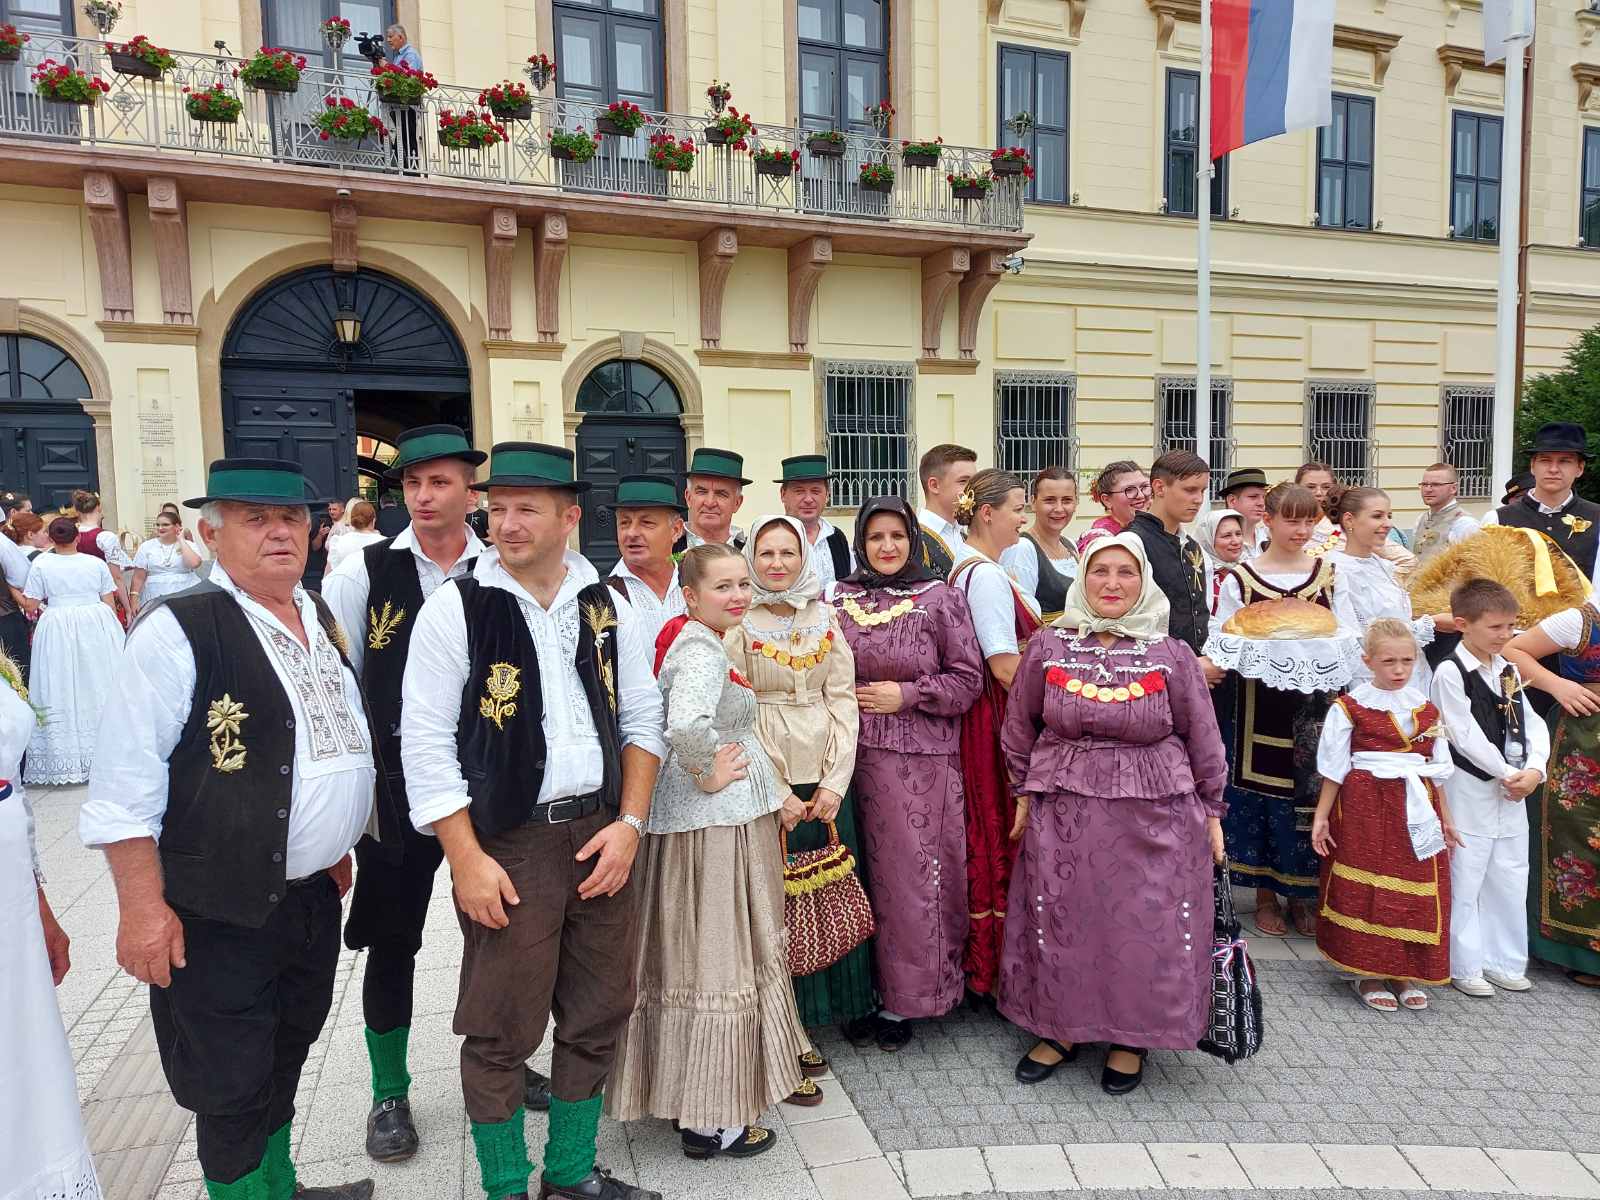 Posjet Hrvatskom kulturnom društvu "Vladimir Nazor" iz Sombora